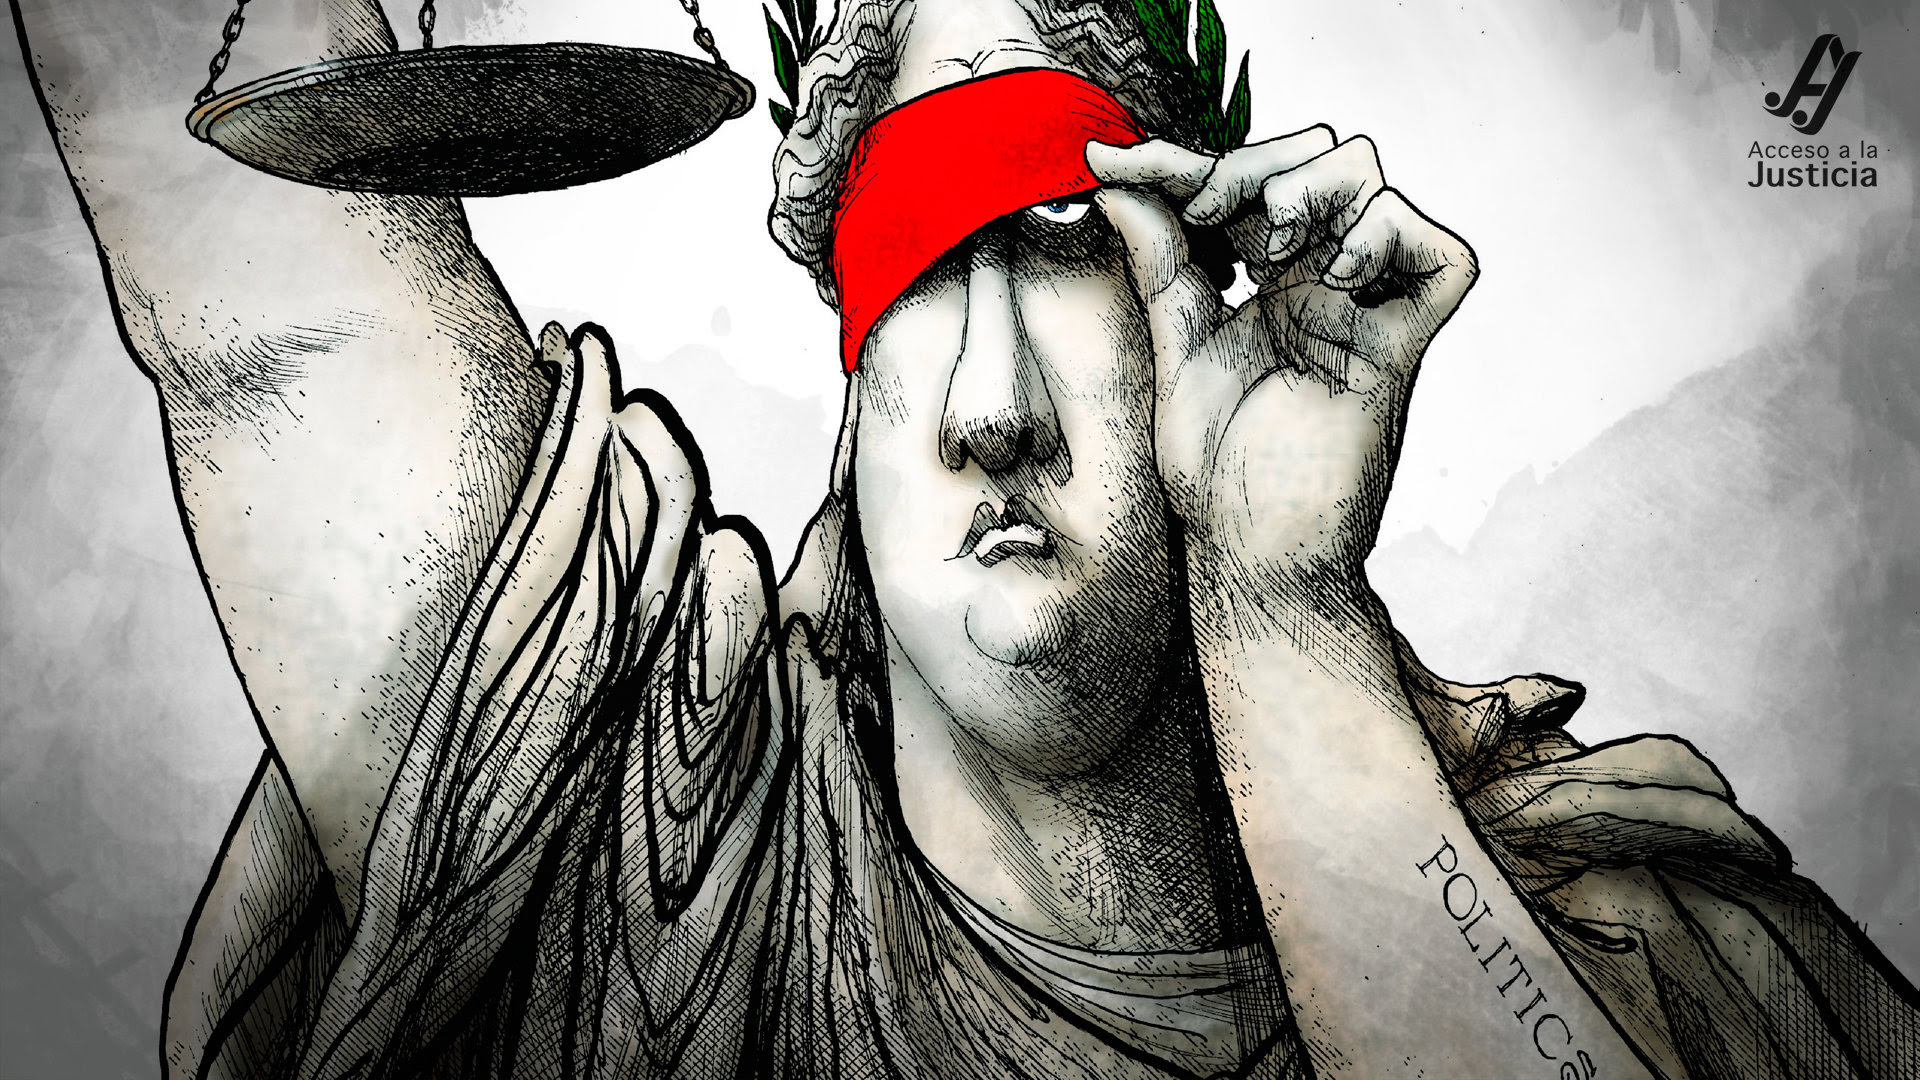 “En Venezuela la justicia no es ciega ni entre militares”